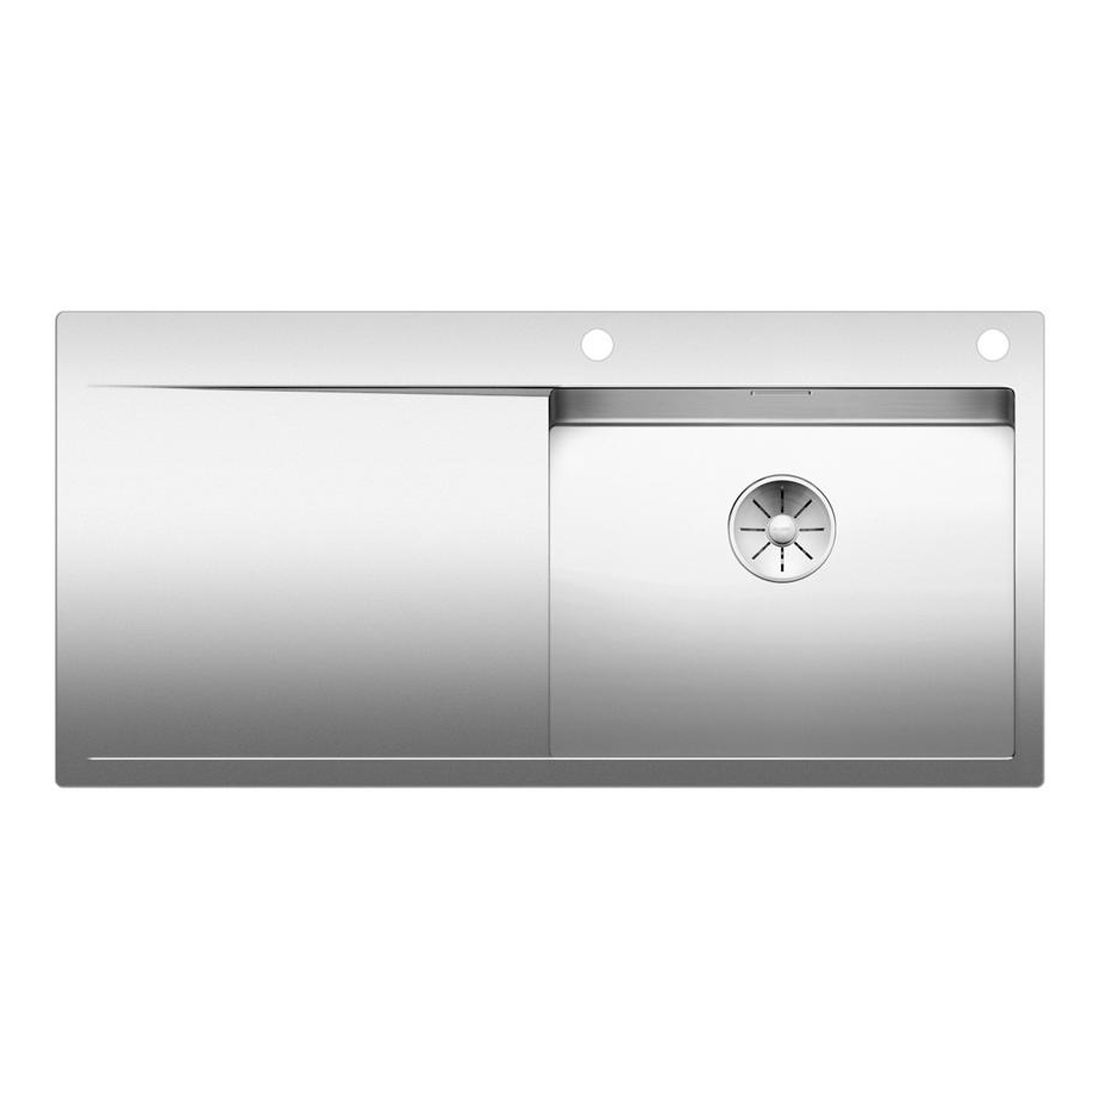 Кухонная мойка Blanco Flow XL 6S-IF полированная сталь набор аксессуаров inda indissima barra 200a67mns сталь